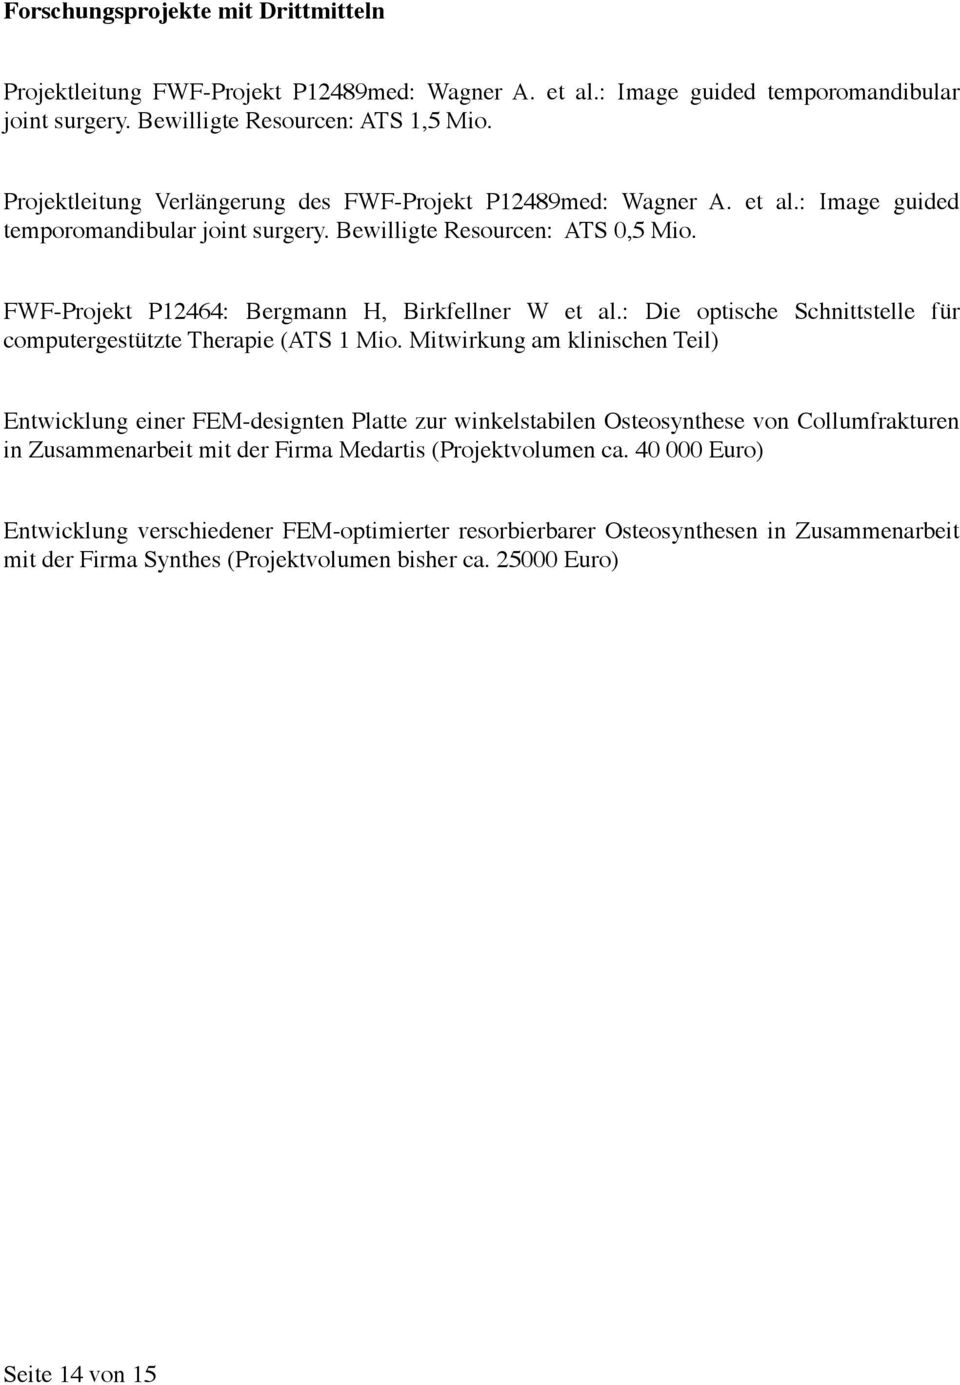 FWF-Projekt P12464: Bergmann H, Birkfellner W et al.: Die optische Schnittstelle für computergestützte Therapie (ATS 1 Mio.